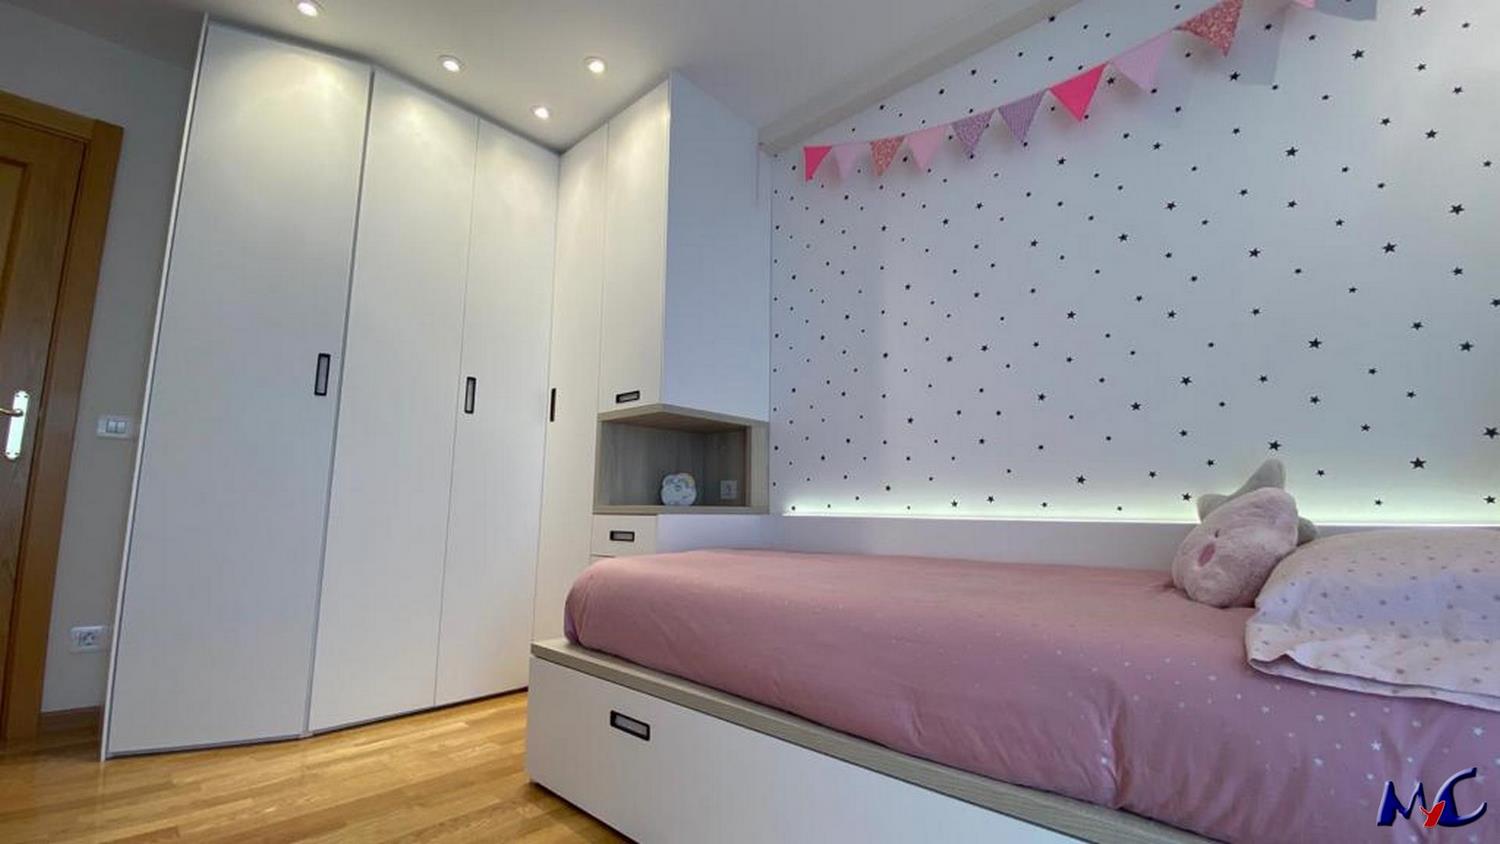 Dormitorio juvenil en acabados blanco y roble - MyC Mobiliario y